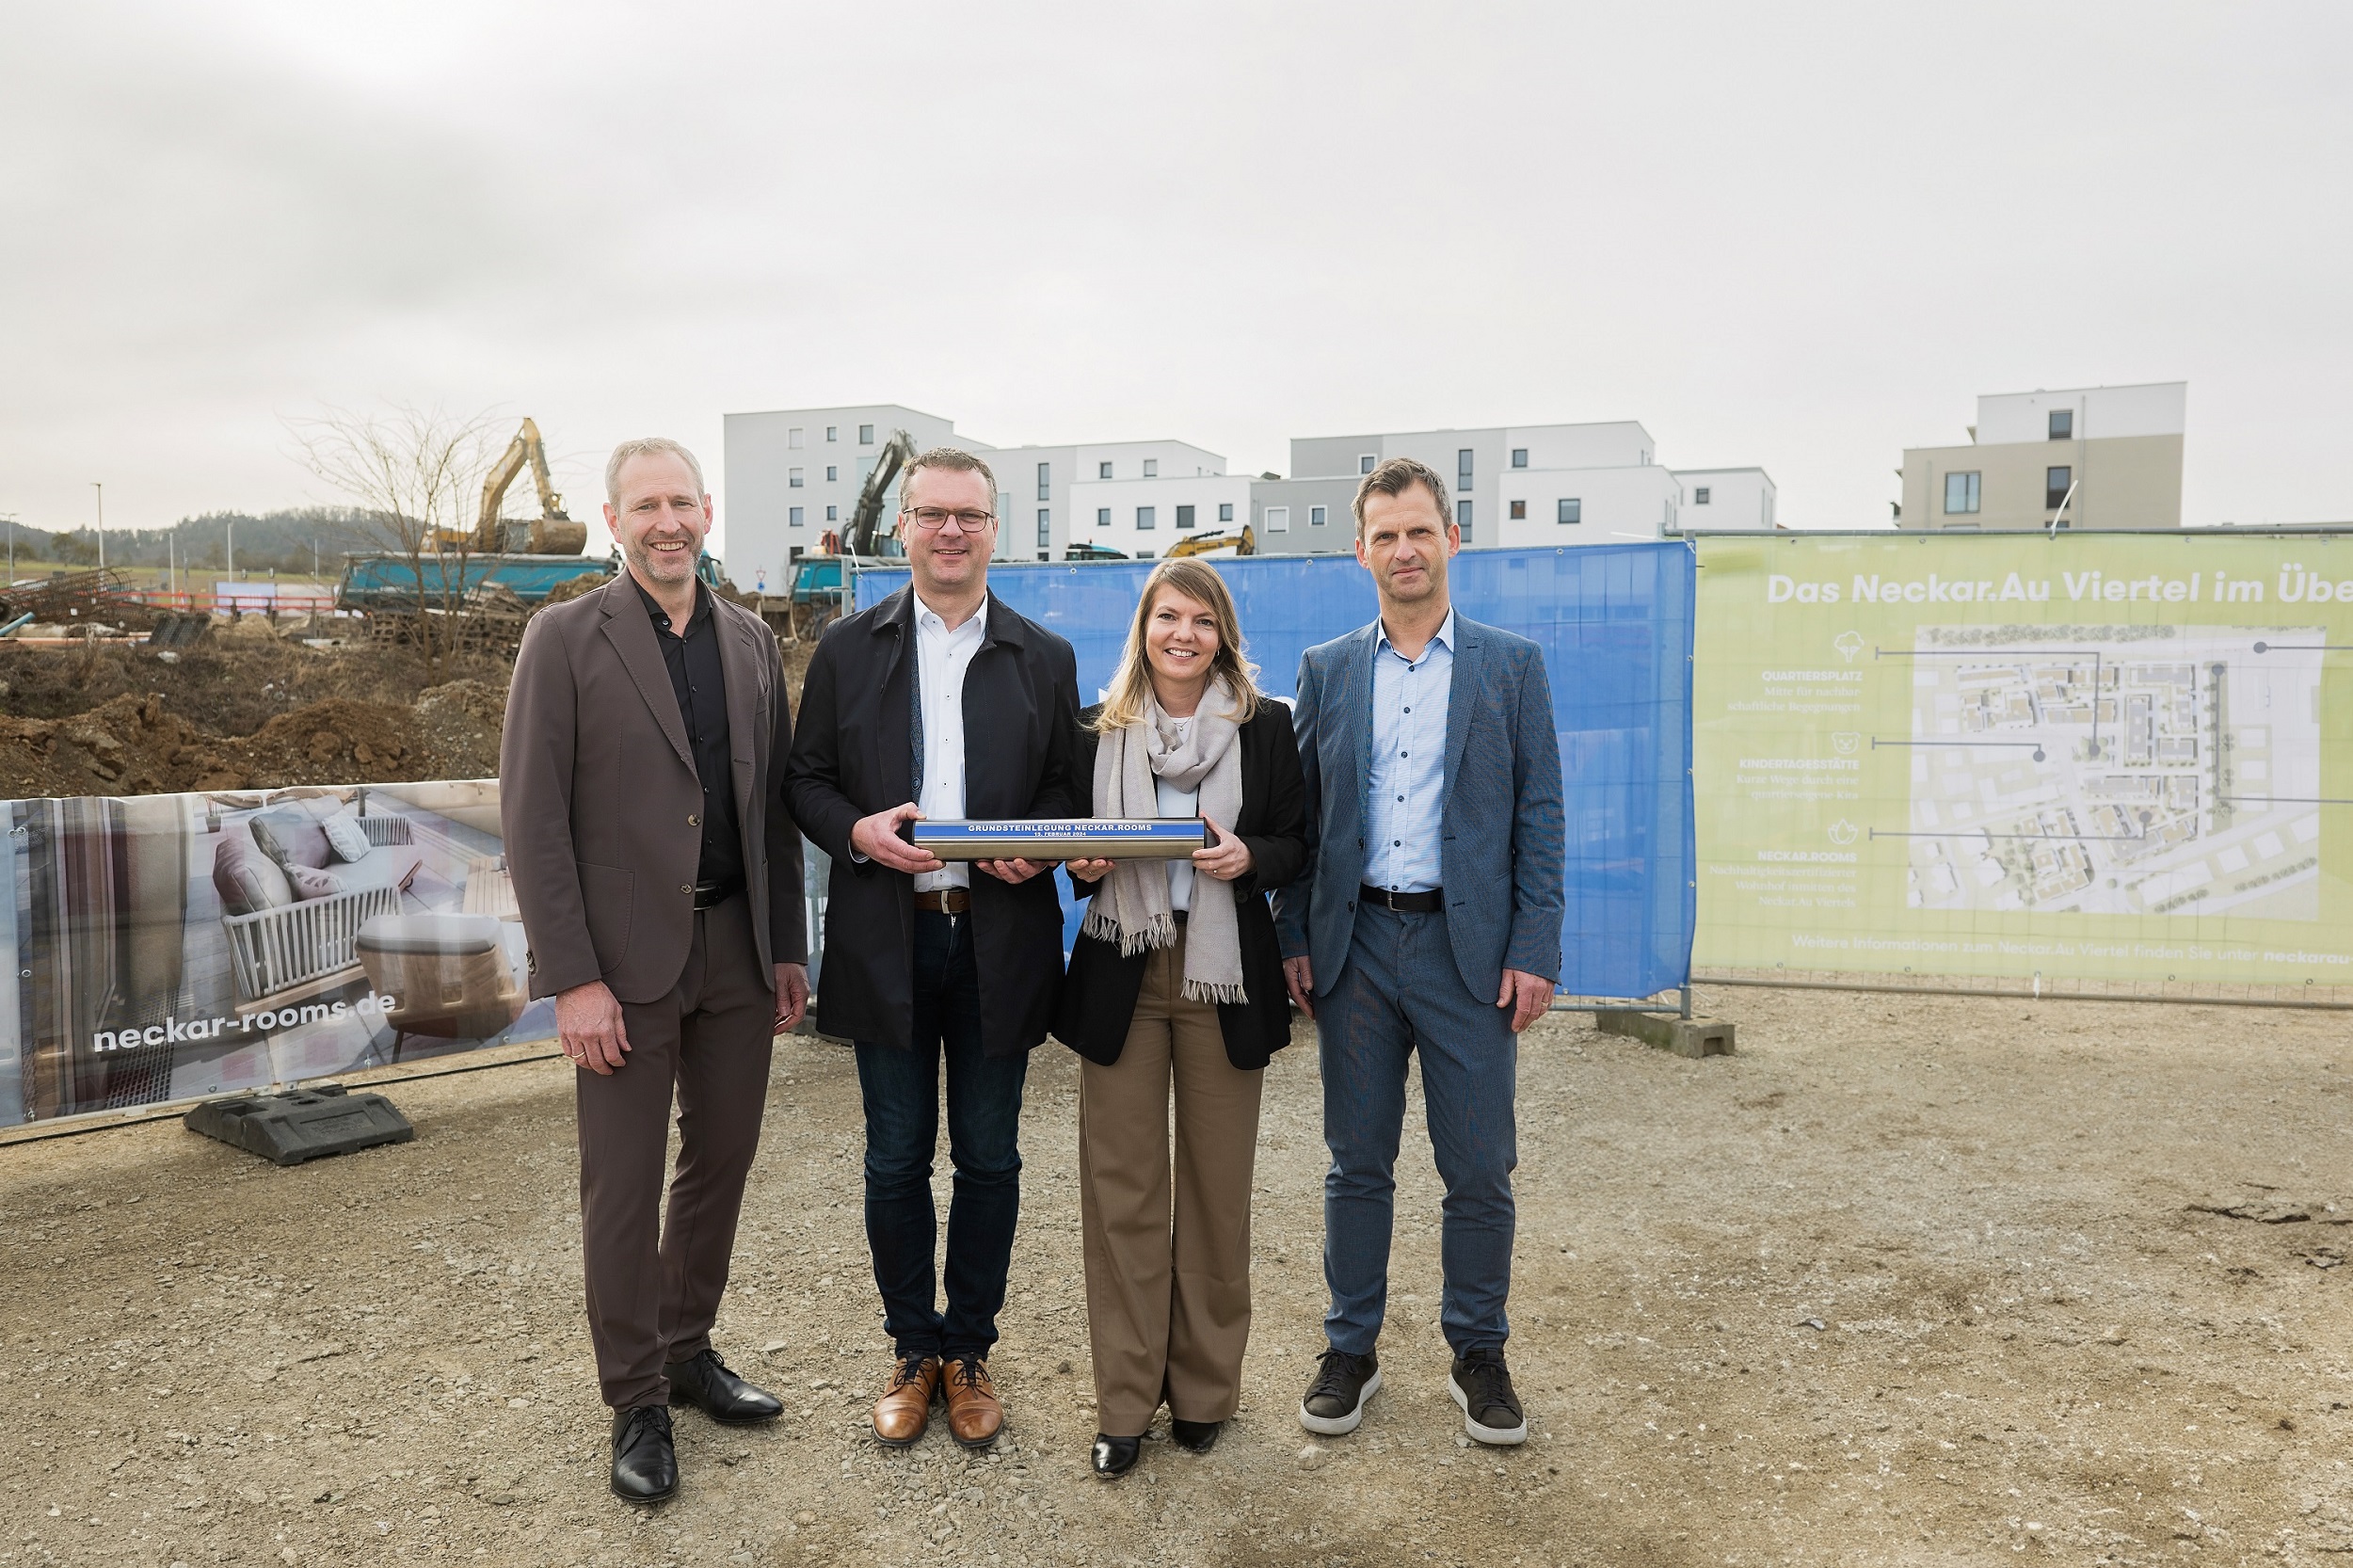 Baustart und Grundsteinlegung für Instone-Projekt „Neckar.Rooms“ im „Neckar.Au Viertel" in Rottenburg am Neckar 